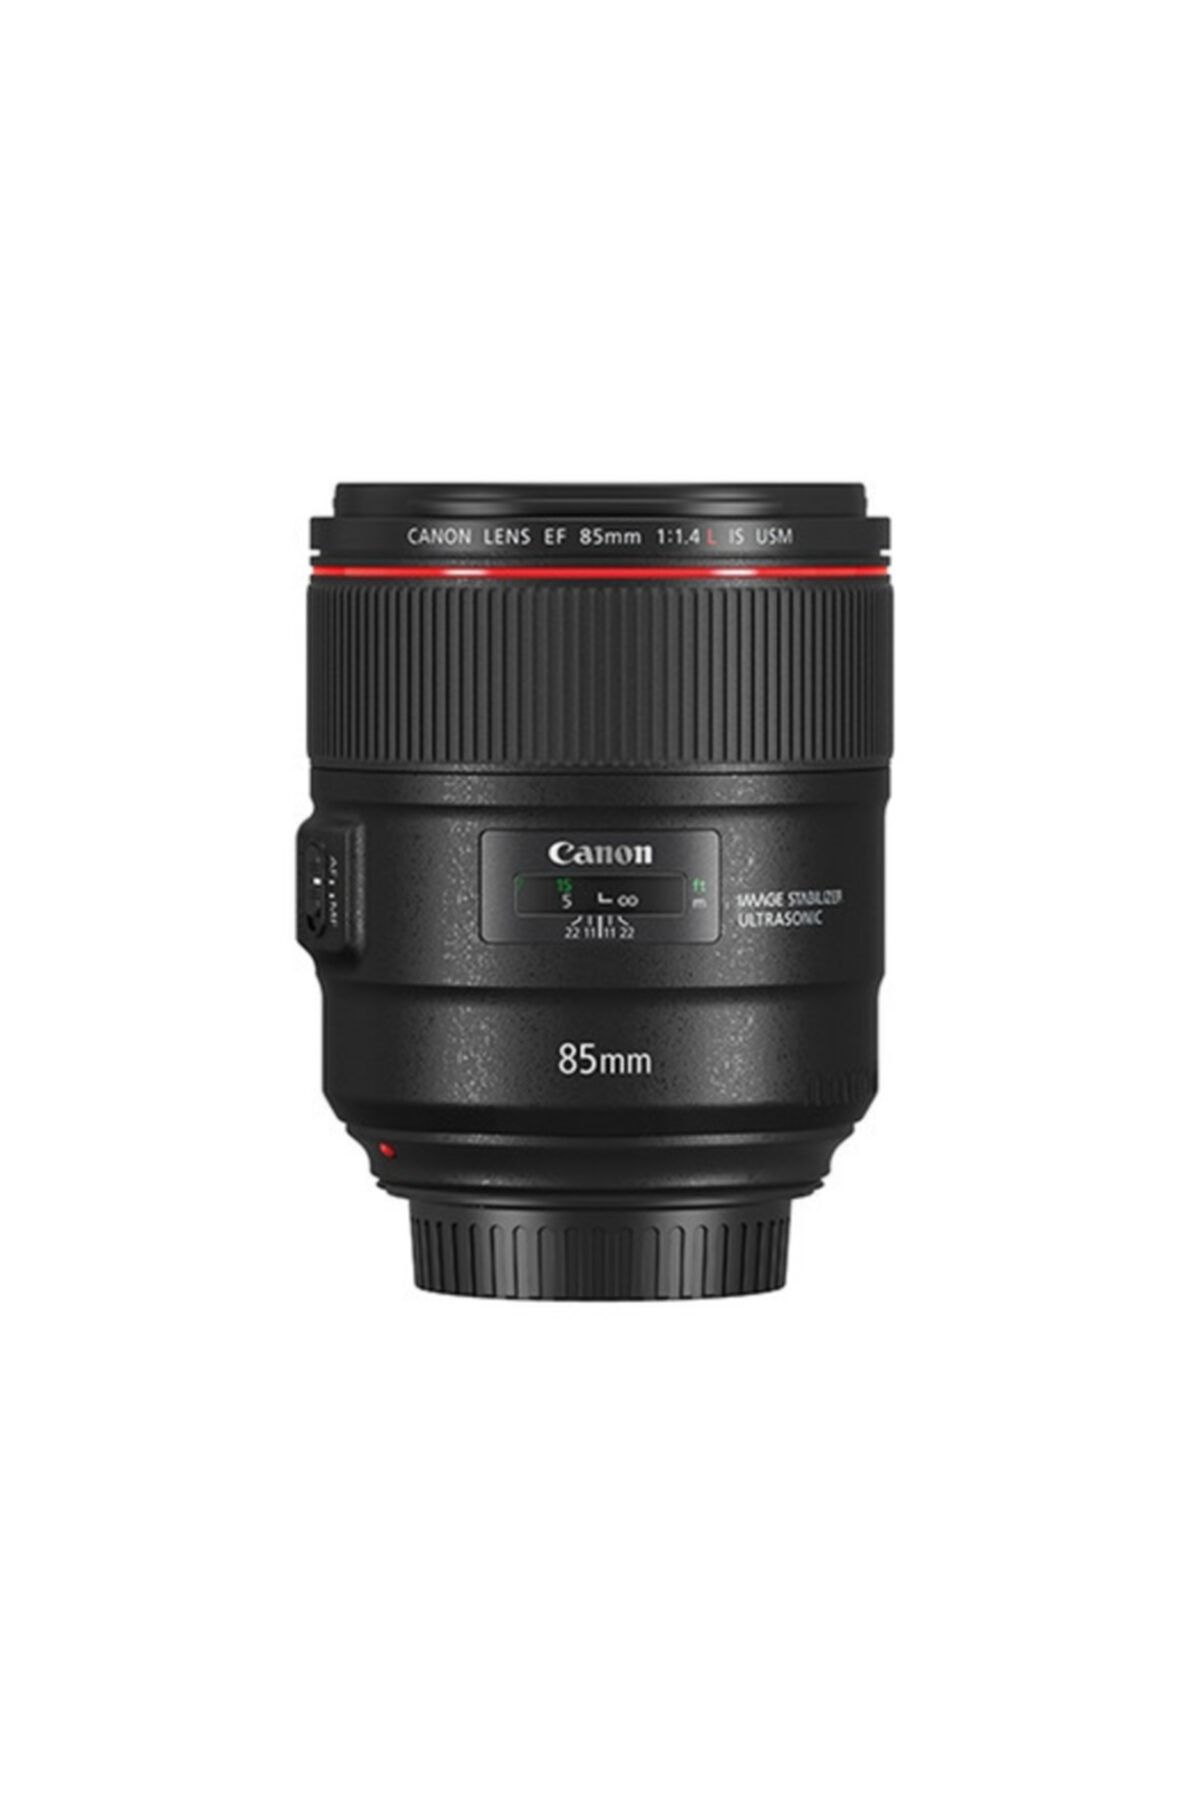 Canon Lens Ef85mm F1.4l Is Usm